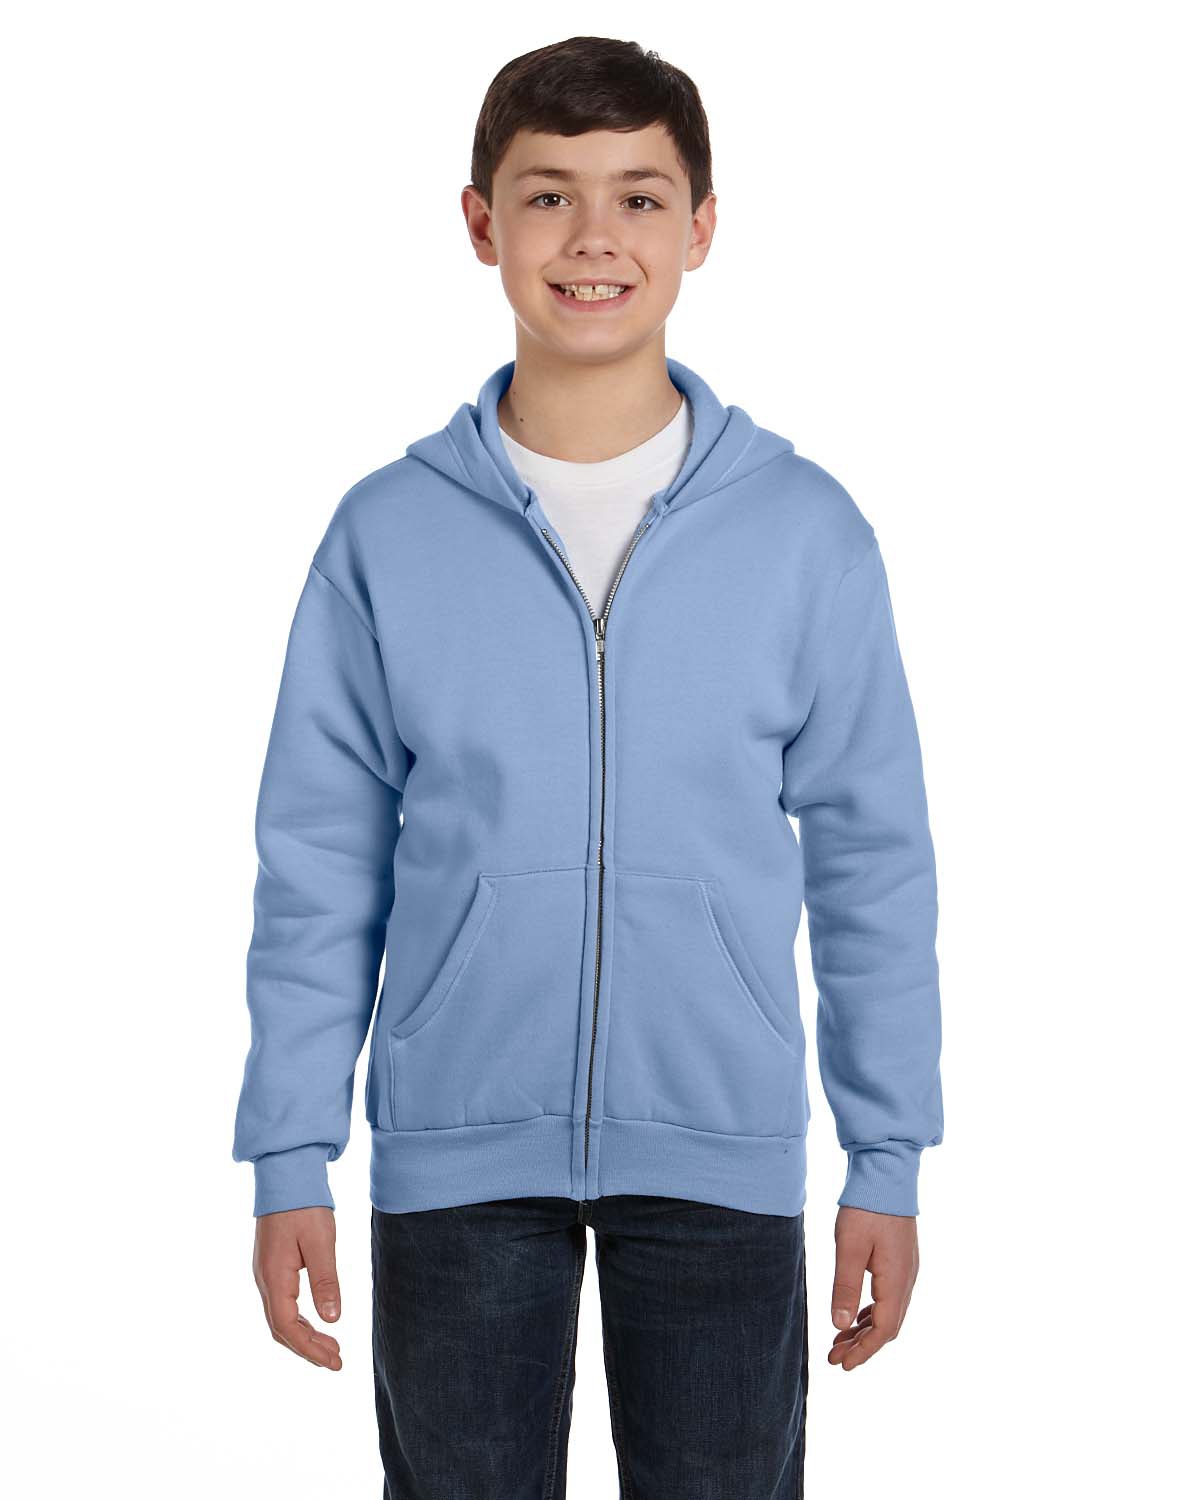 Hanes P480 EcoSmart Youth 7.8 Oz Full-Zip Hooded Sweatshirt